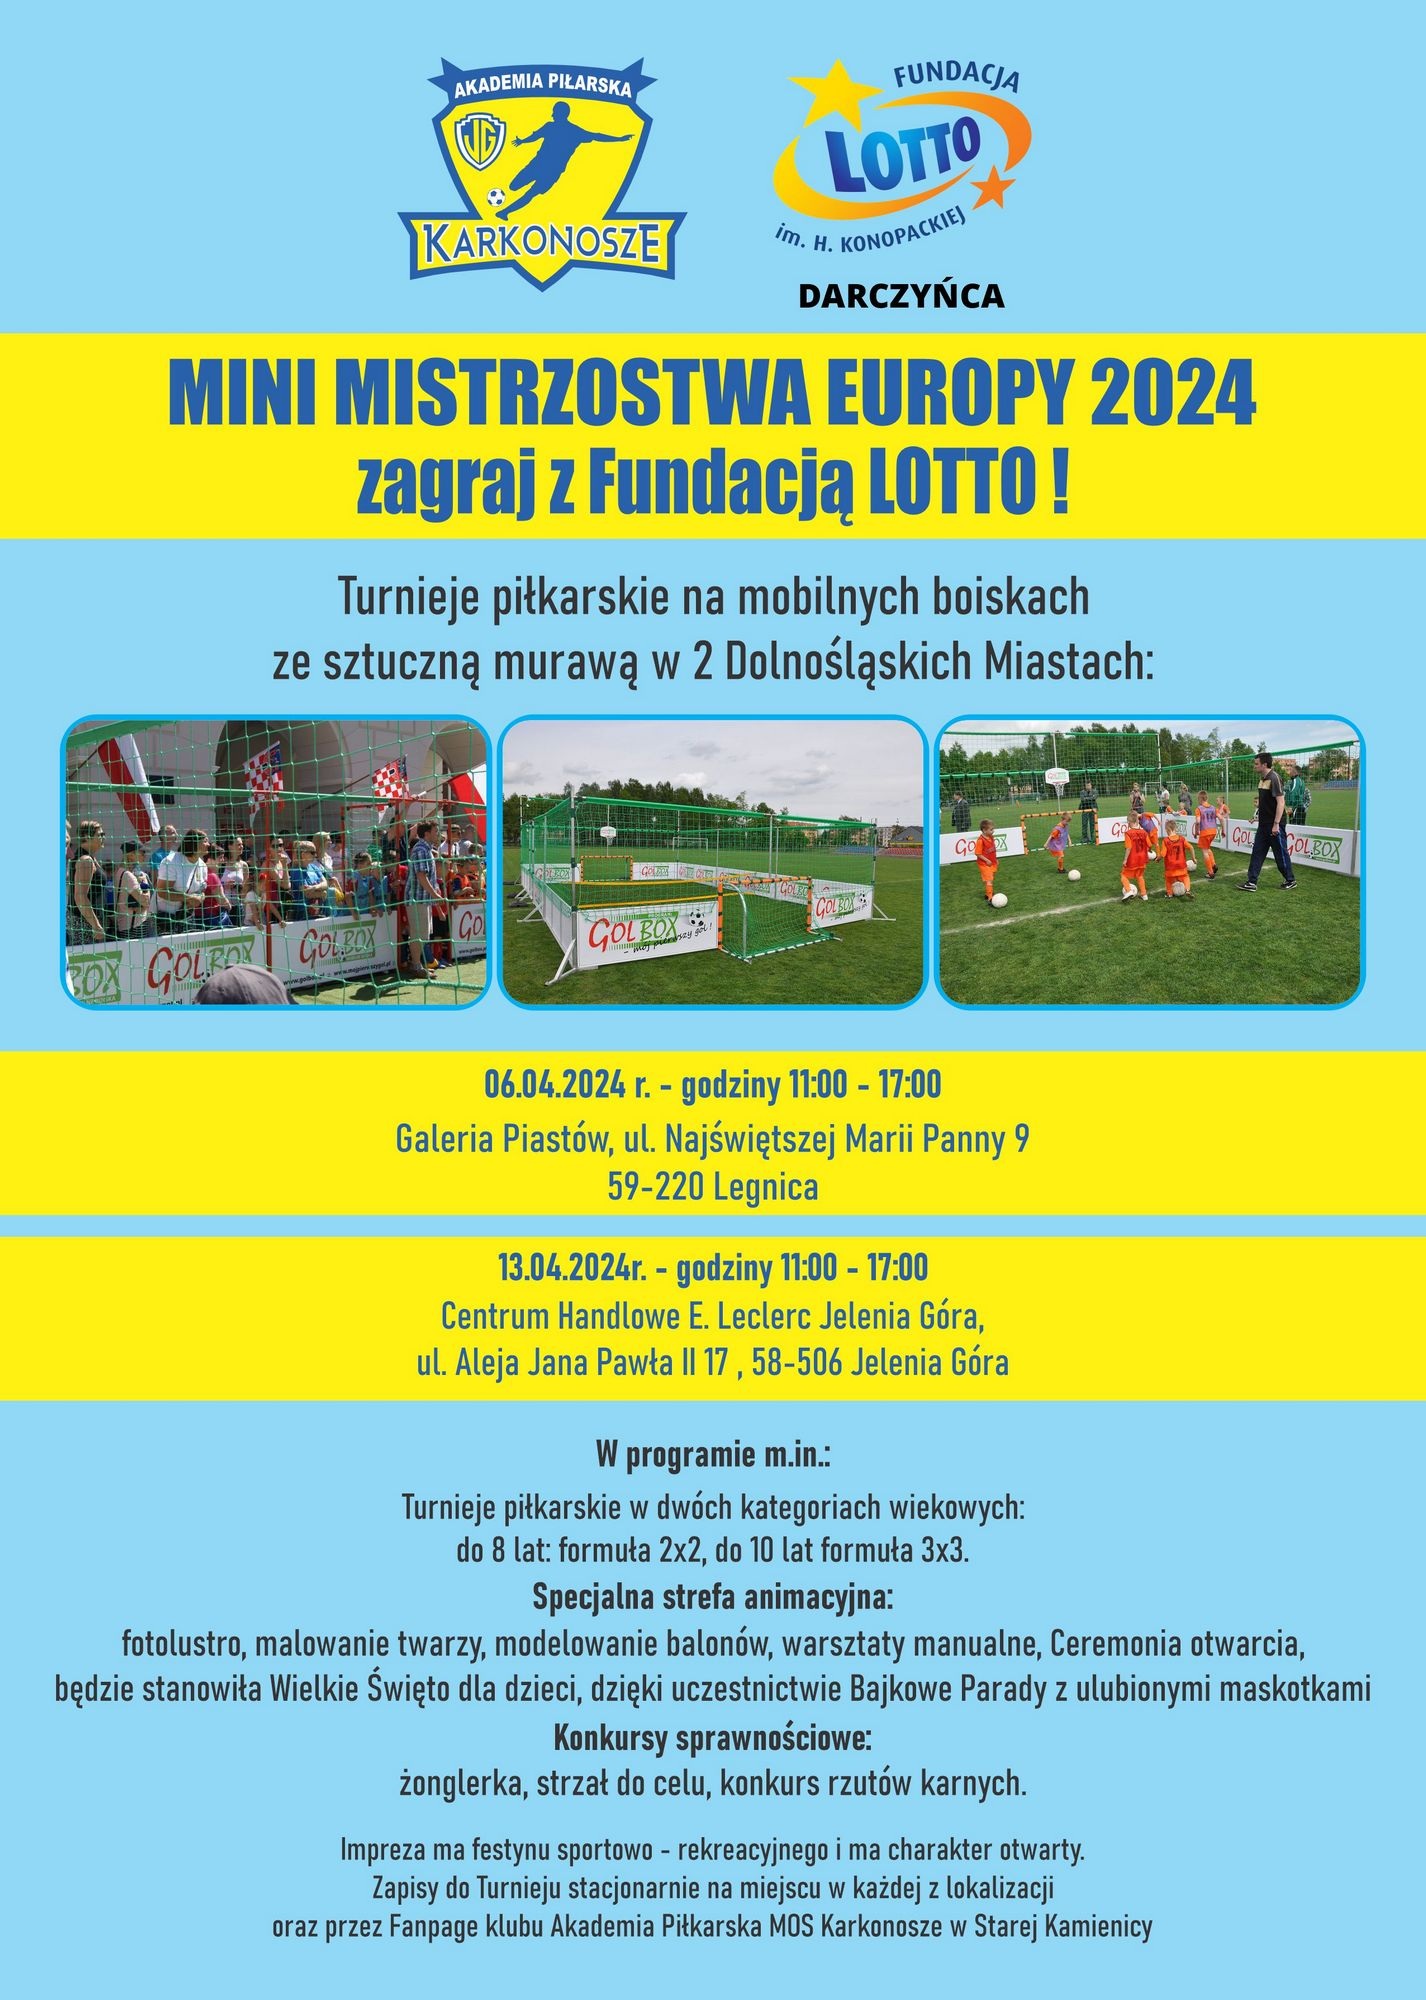 Zapraszamy do Jeleniej Góry już 13.04.202r. na Mini Mistrzostwa Europy 2024 -zagraj z Fundacją Lotto!